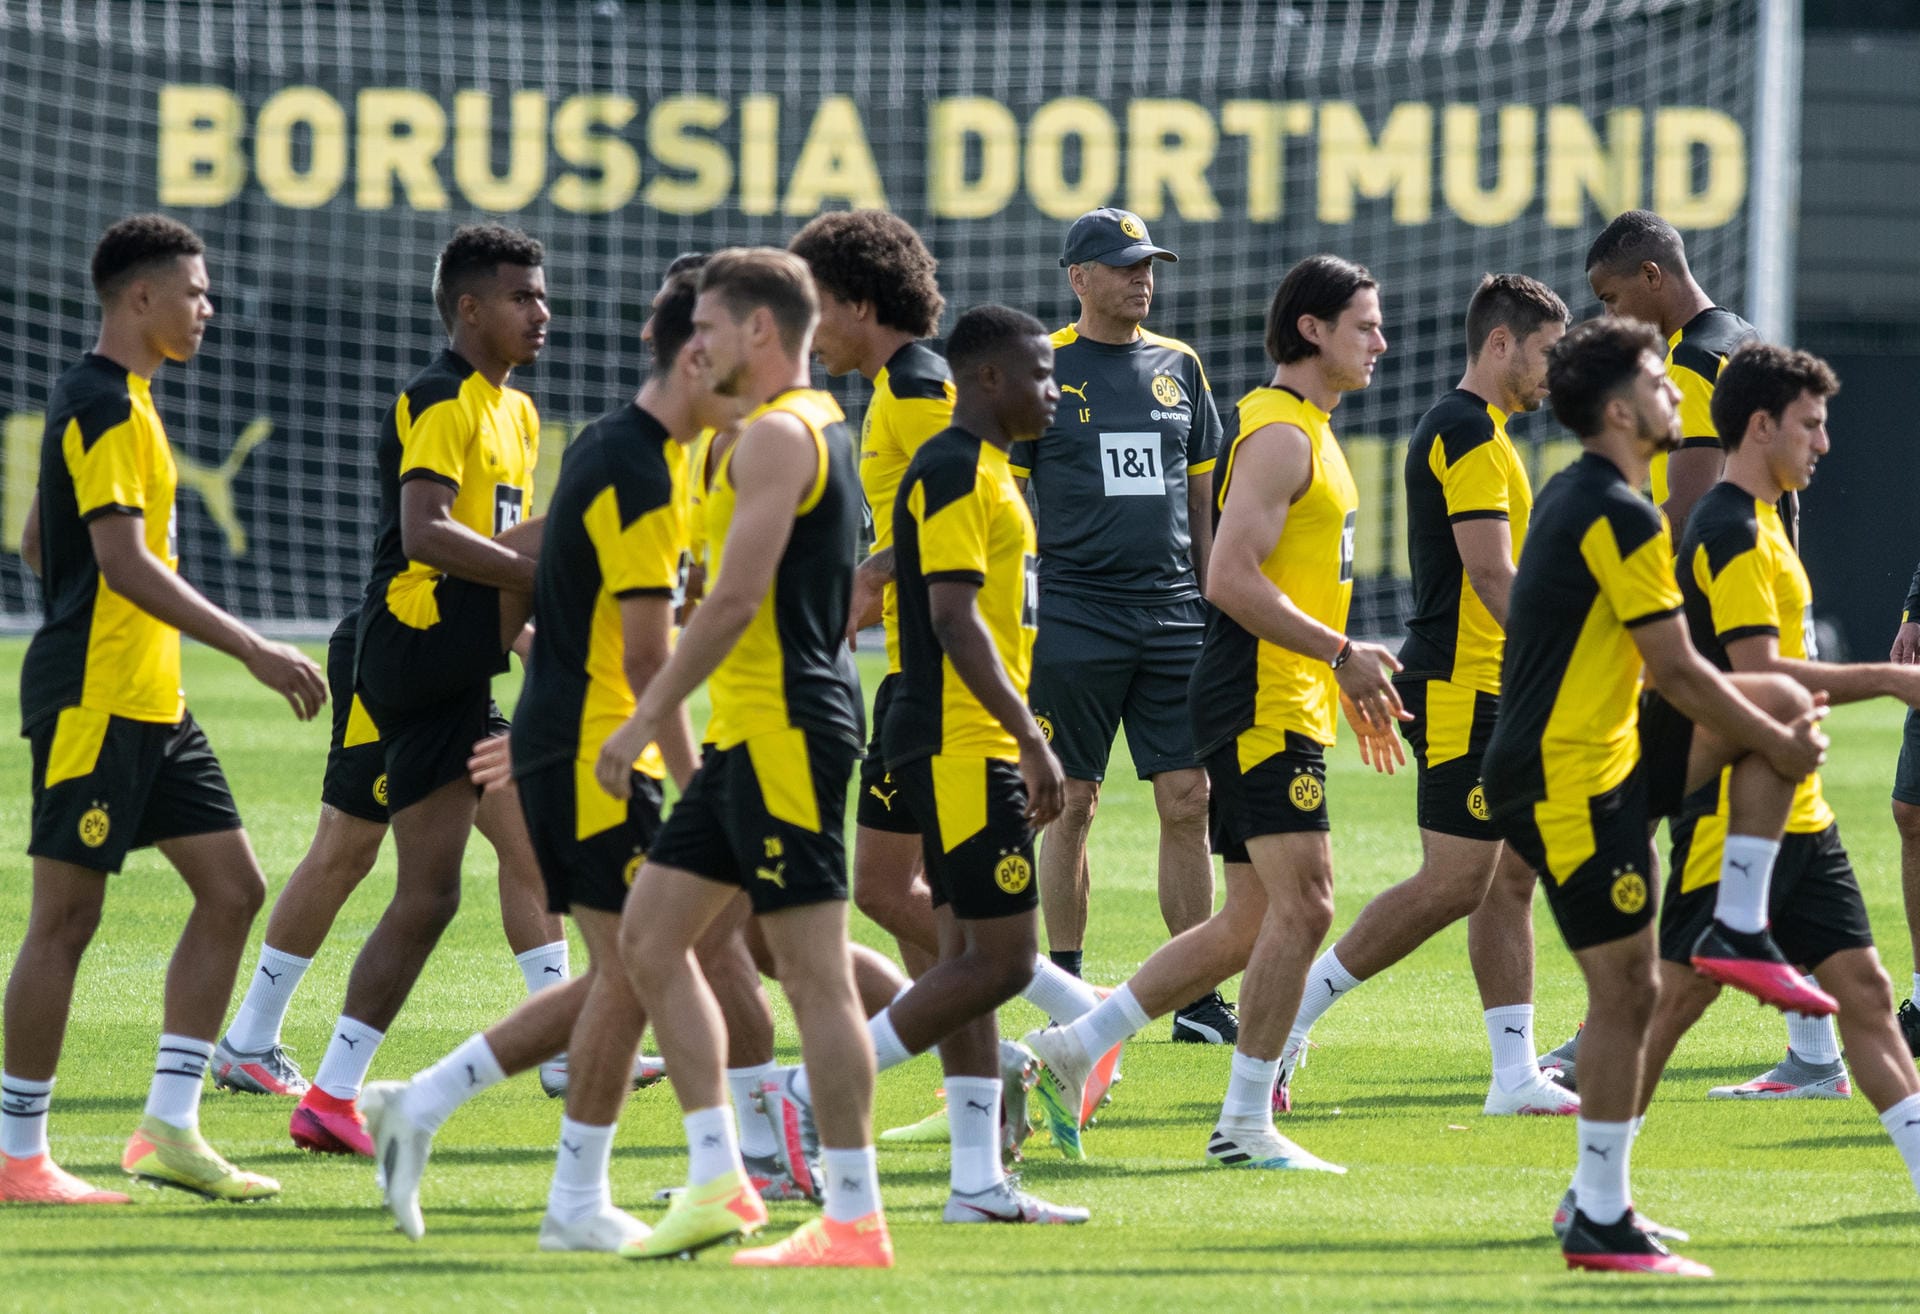 Traingsauftakt bei Borussia Dortmund: Lucien Favre (6.v.l.) leitet das Training seiner Mannschaft.